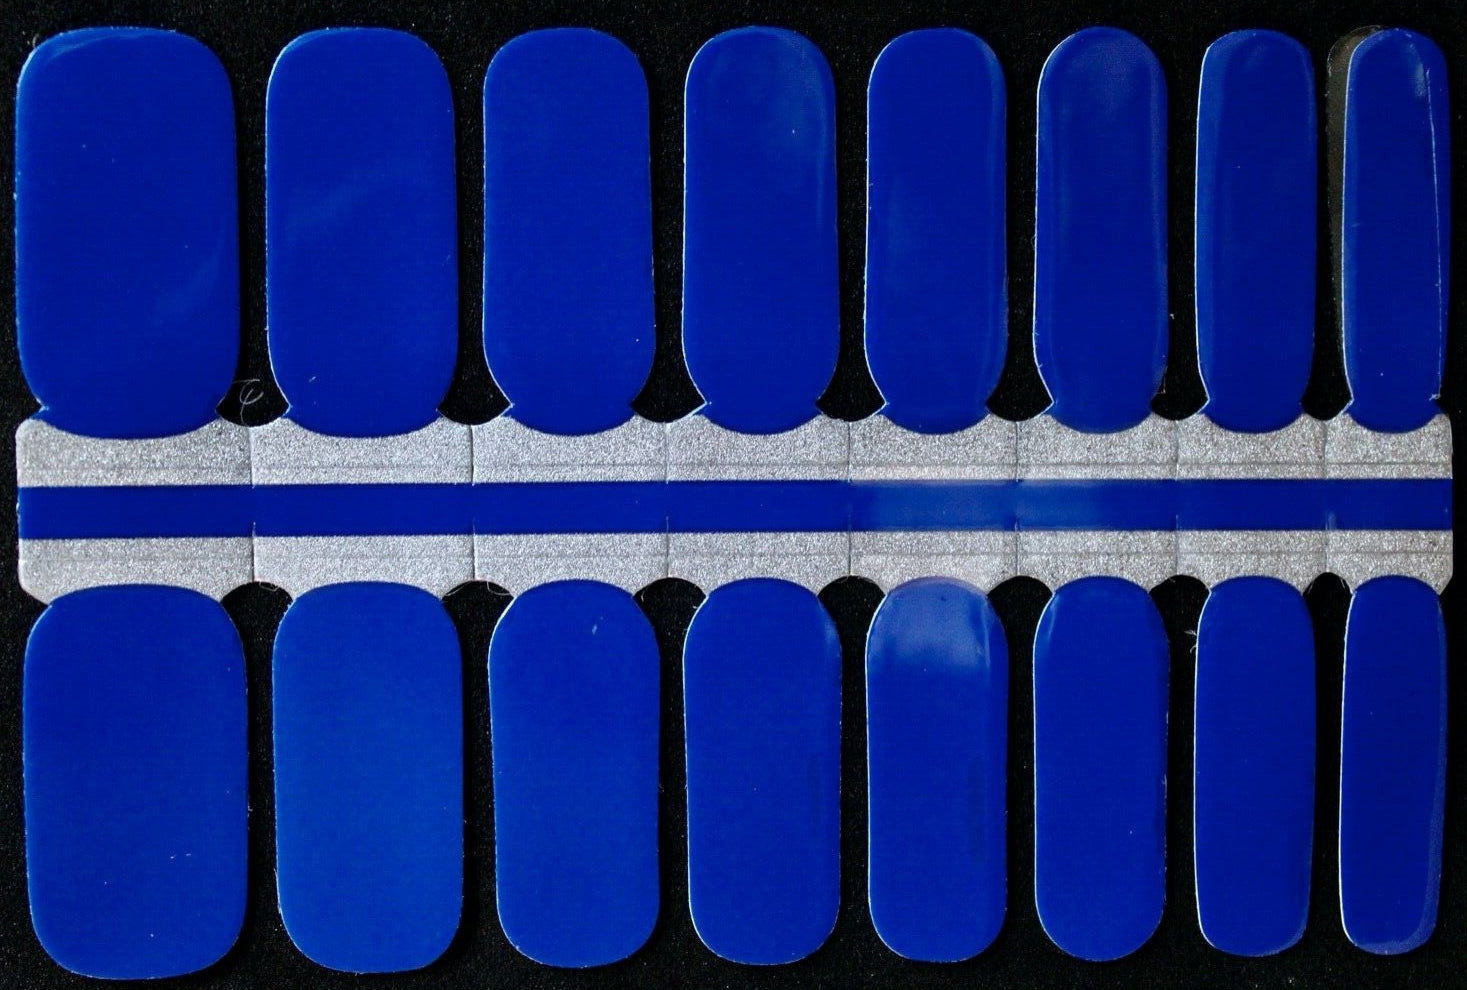 Electric blue nail polish wraps strips